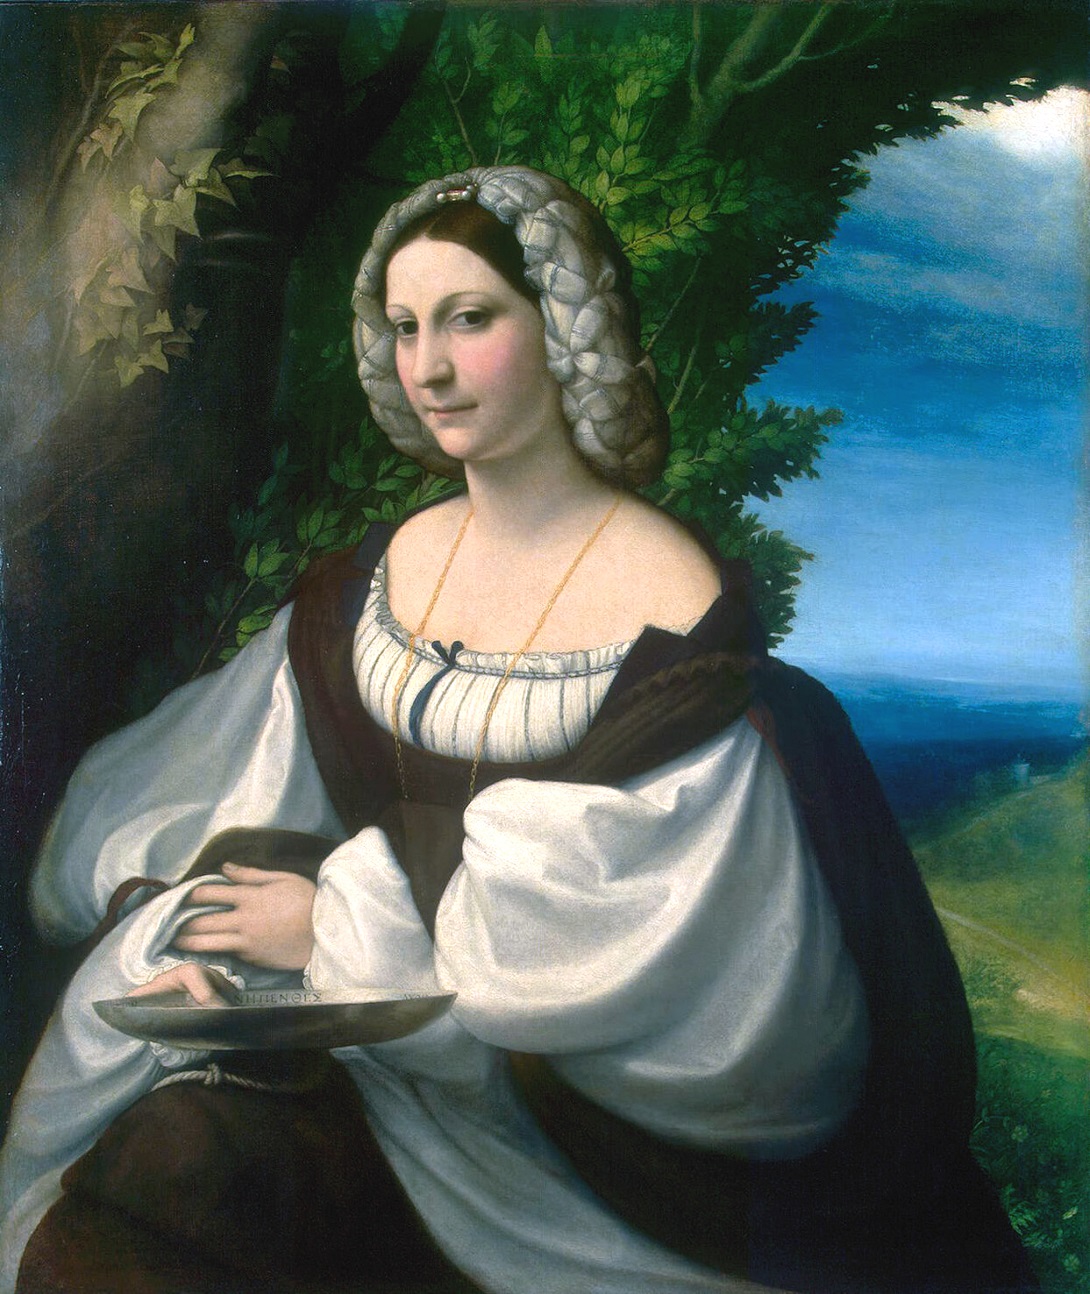 Correggio (Antonio Allegri), Ritratto di giovane donna, 1520 ca., olio su tela, 103 x 87,5 cm San Pietroburgo, The State Hermitage Museum